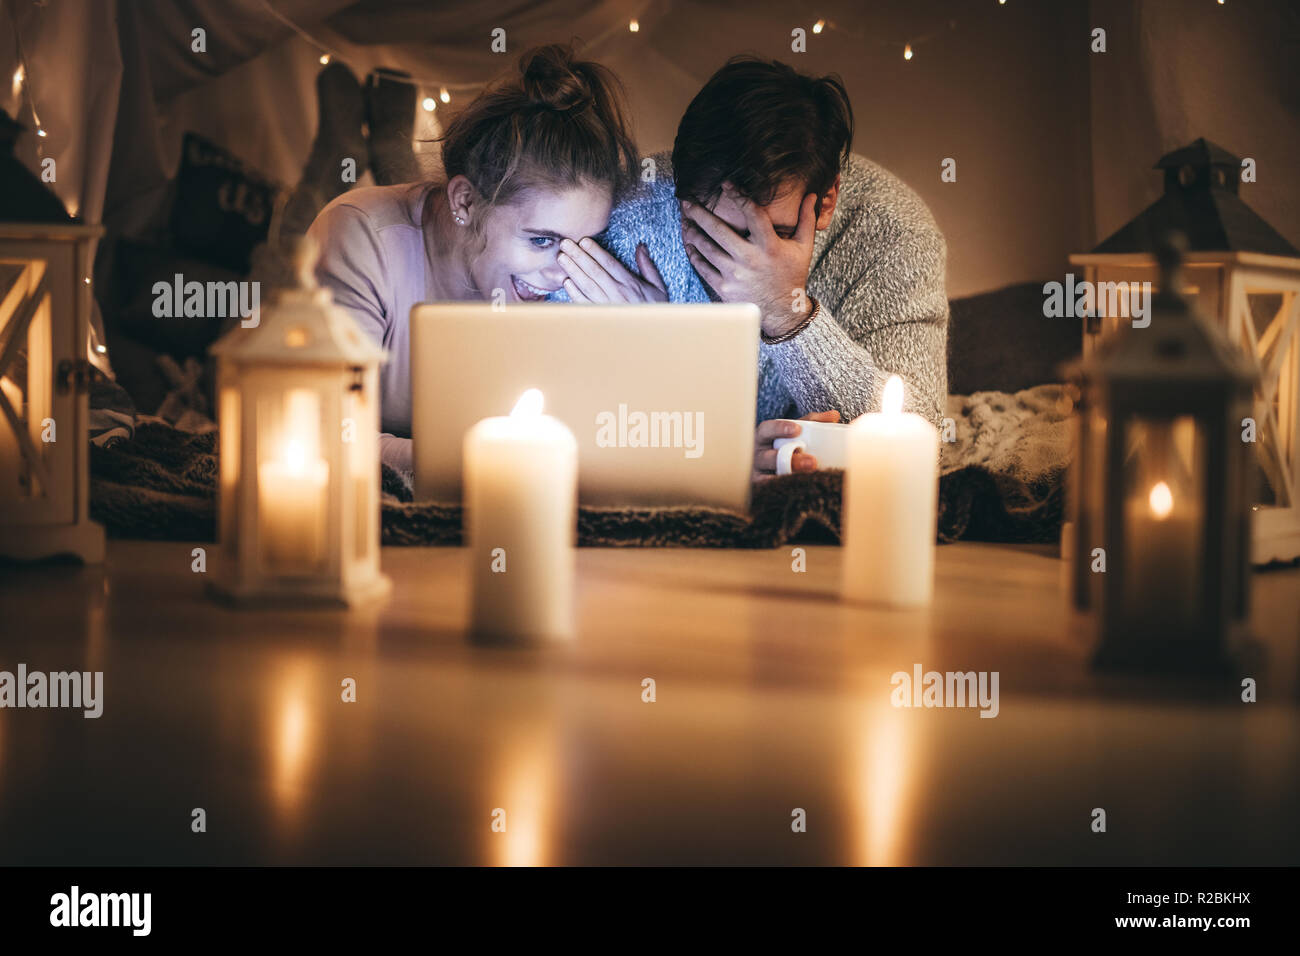 Romantisches Paar liegend auf dem Bett mit einem Laptop in der Nacht in einem Zimmer mit Kerzen geschmückt. Lächeln, Mann und Frau, die ihre Gesichter während an einem l suchen Stockfoto